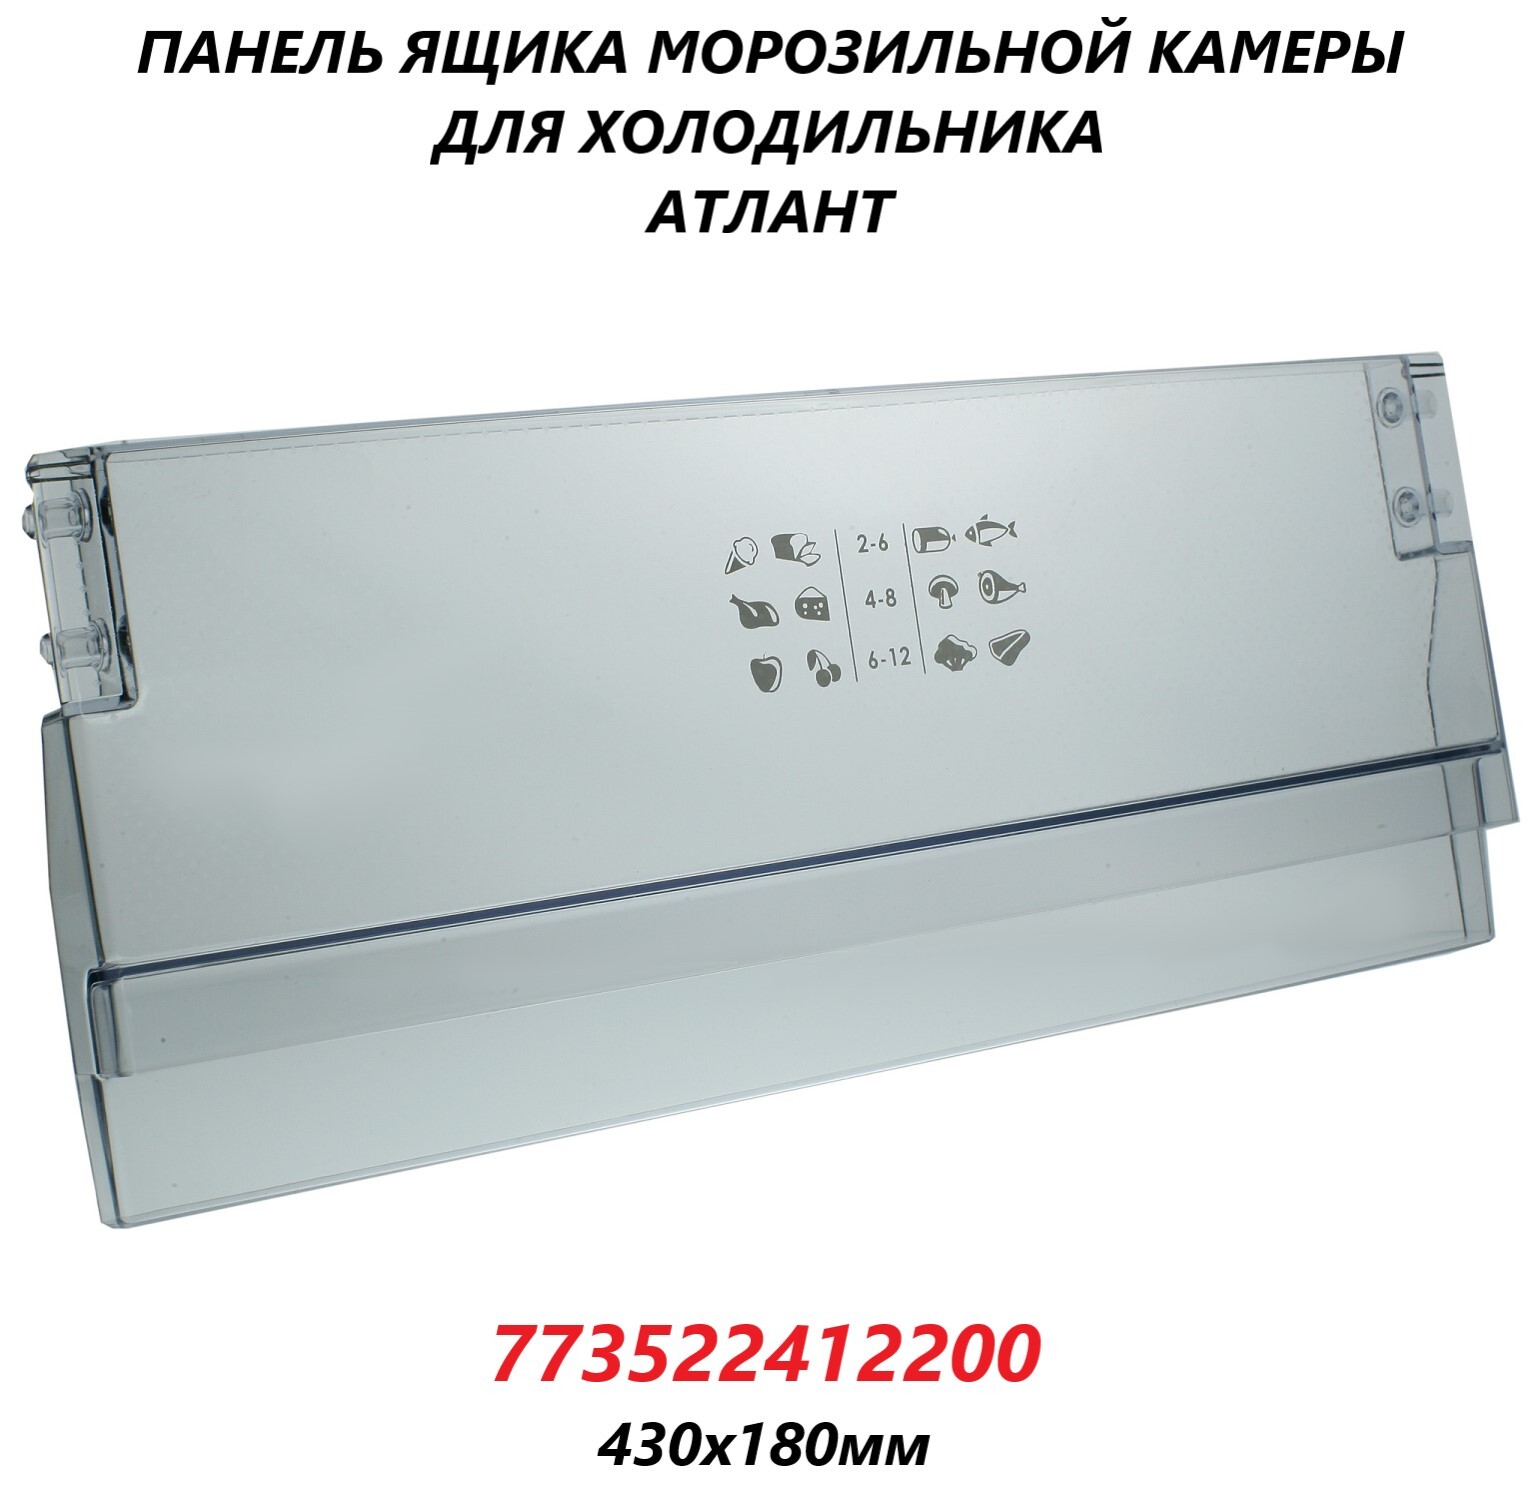 Панель(щиток/крышка)ящикаморозильнойкамерыдляхолодильникаАтлант/773522412200/430х180мм